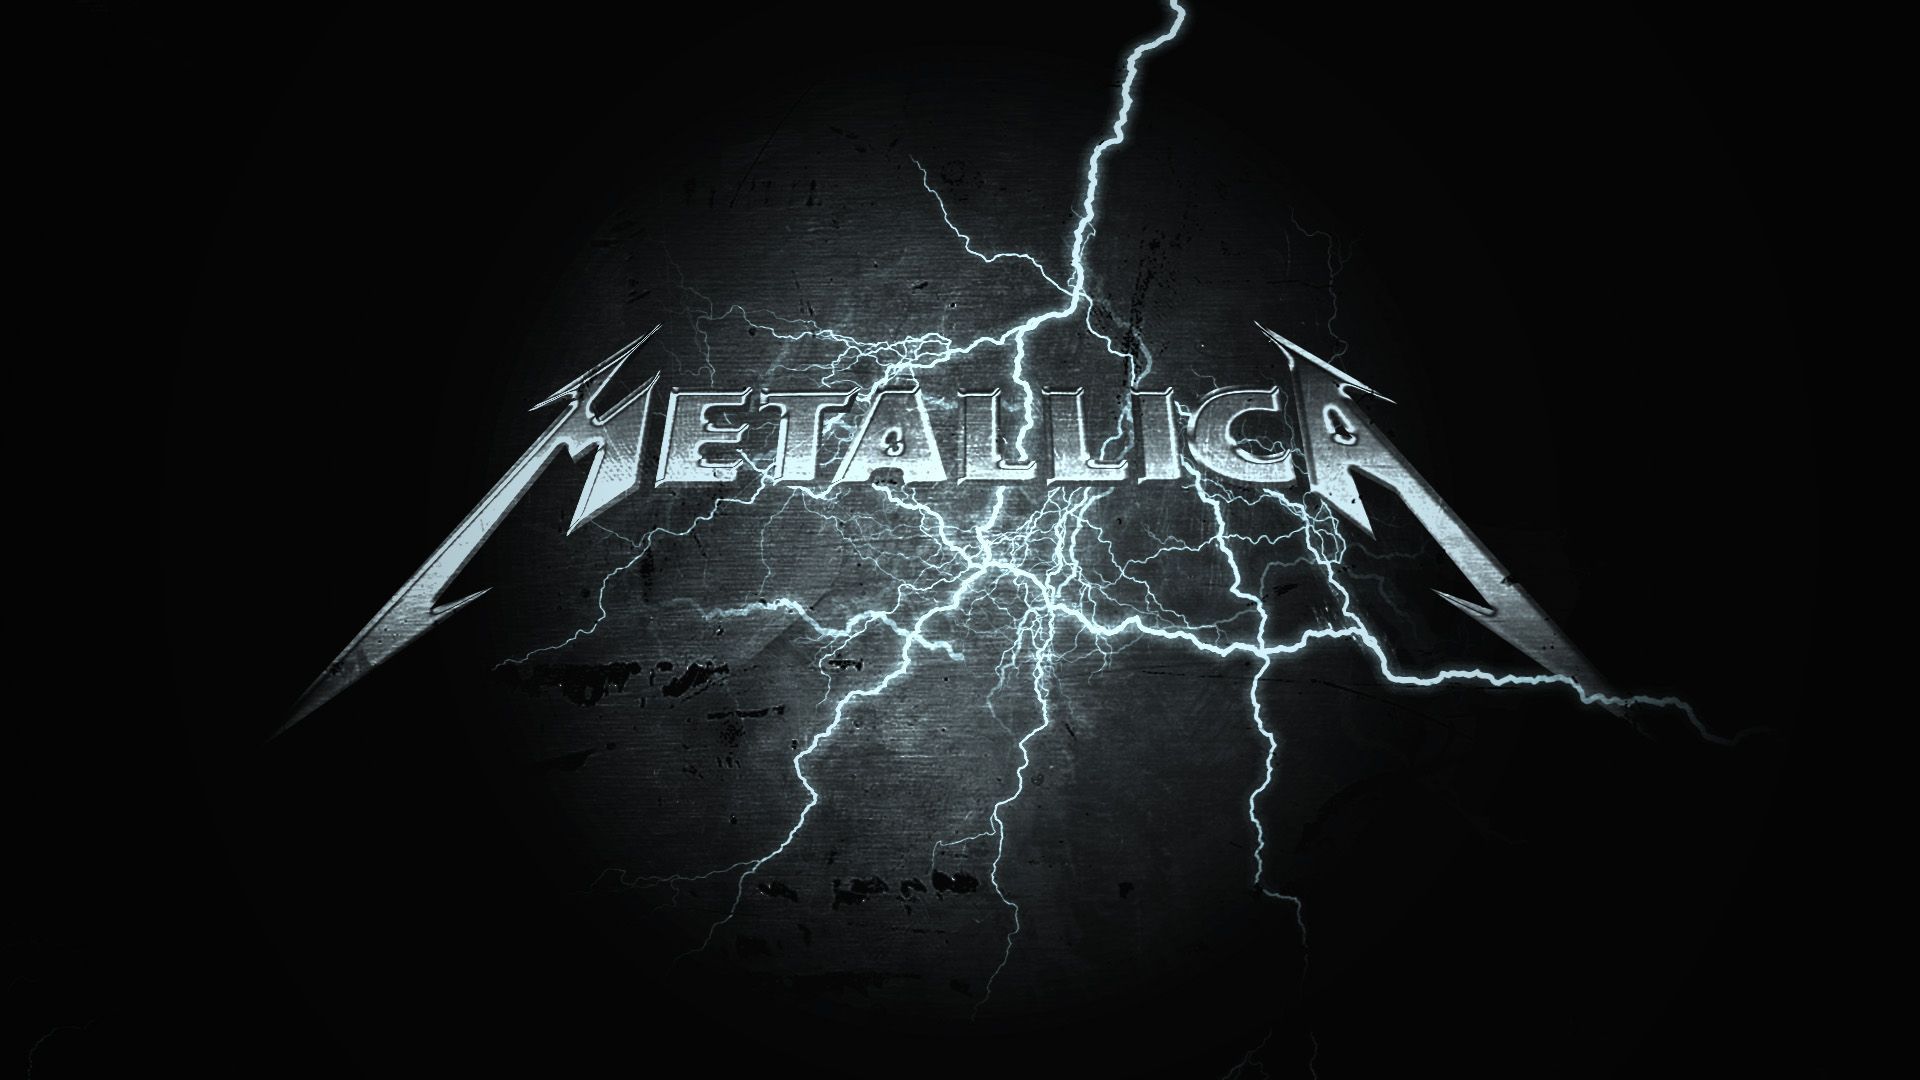 Metallica HD Wallpaper | 1920x1080 | ID:42253